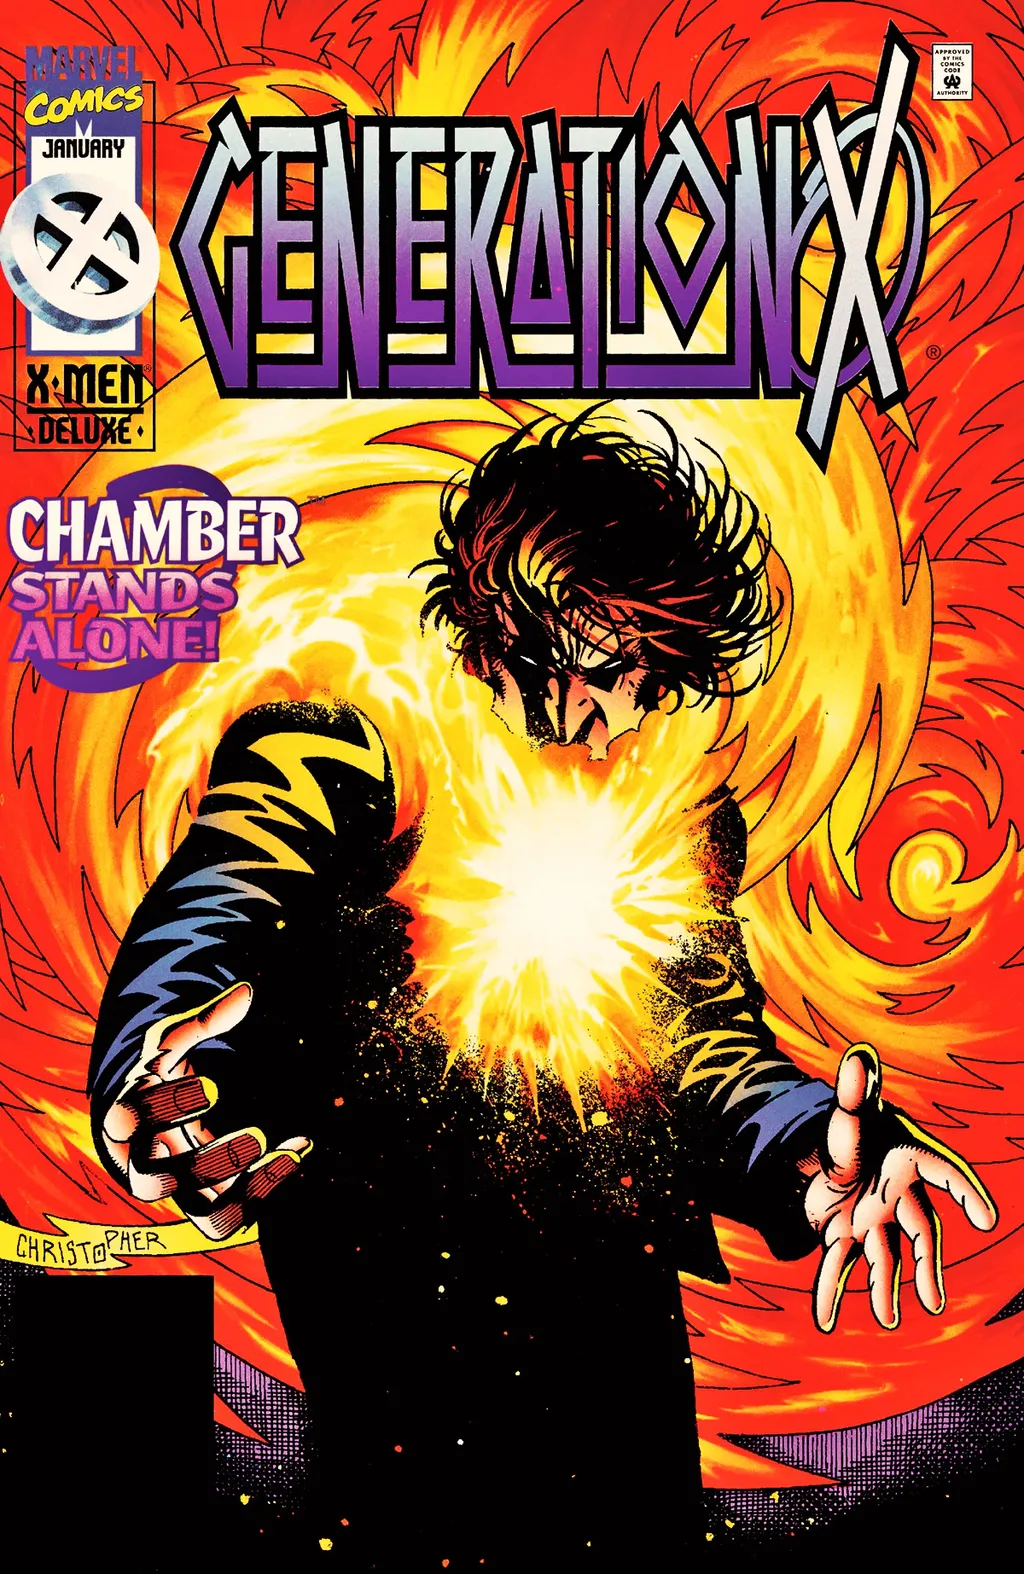  Câmara (Chamber, no original) entrou para o cantinho dos X-Men na Marvel na célebre fase do desenhista Chris Bachalo em Generation X (Imagem: Reprodução/Marvel Comics)